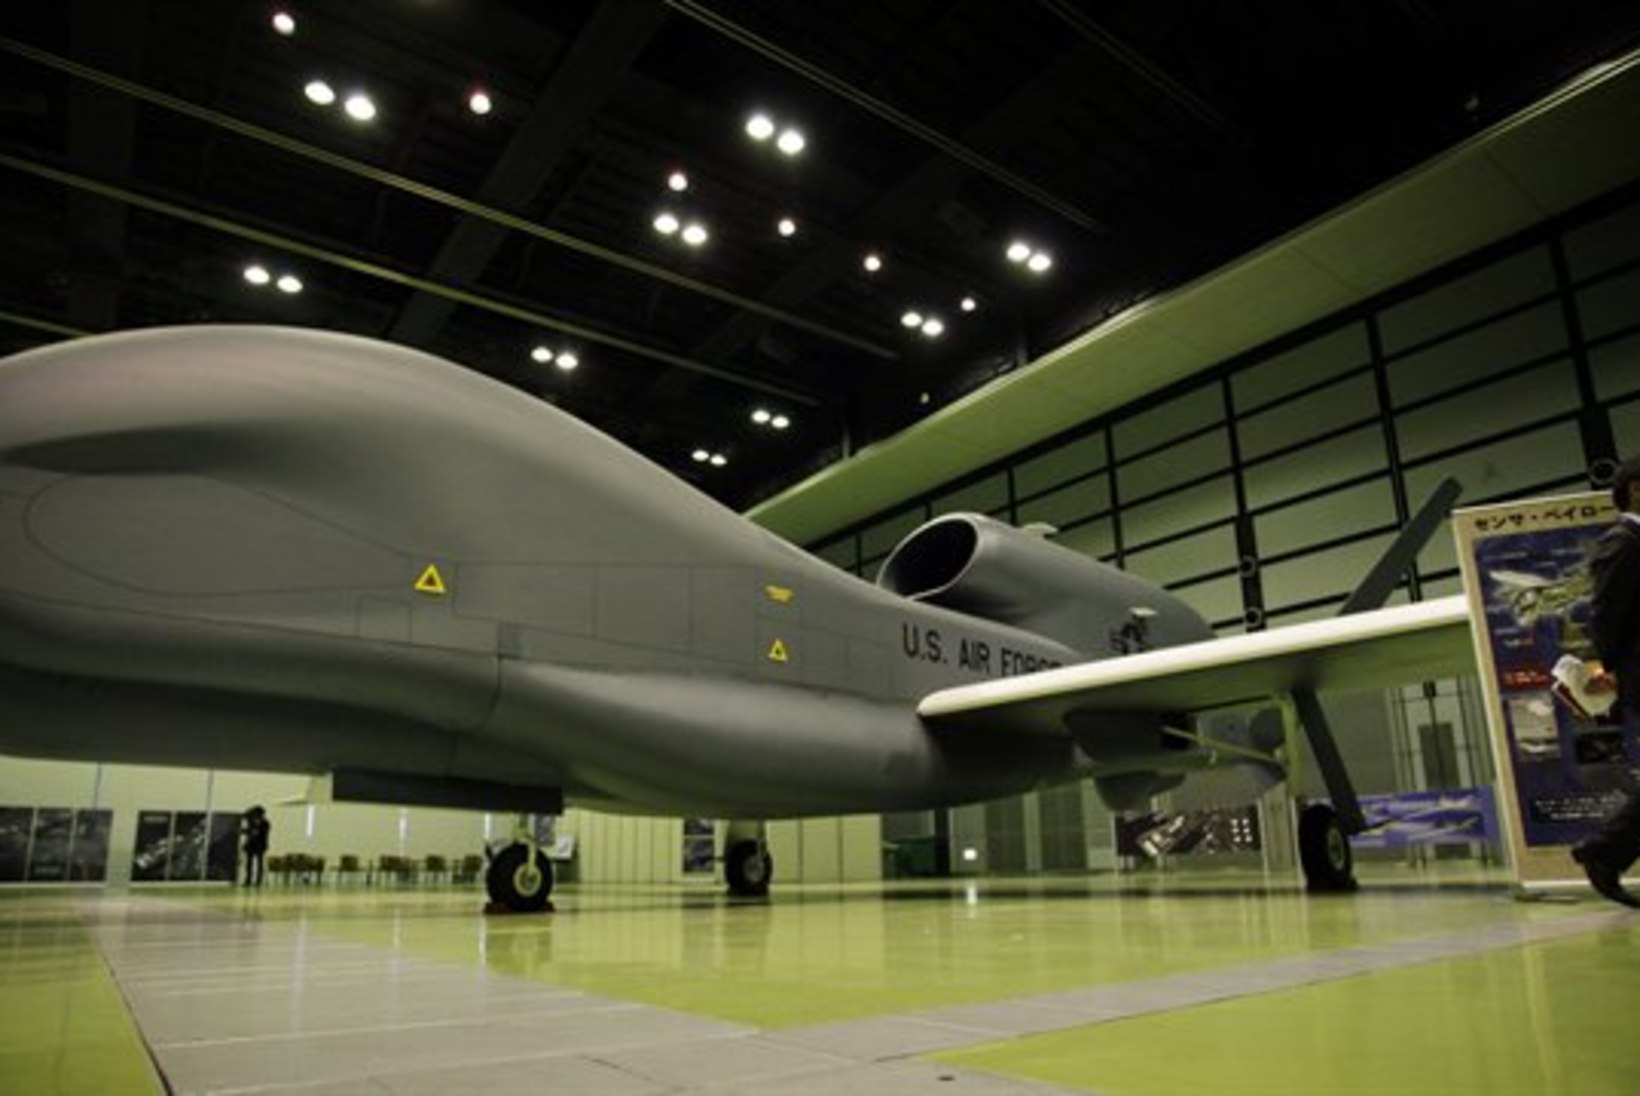 Droonide ajastu: sõjatandril külvavad surma ja hävingut masinad, mida juhitakse teiselt mandrilt